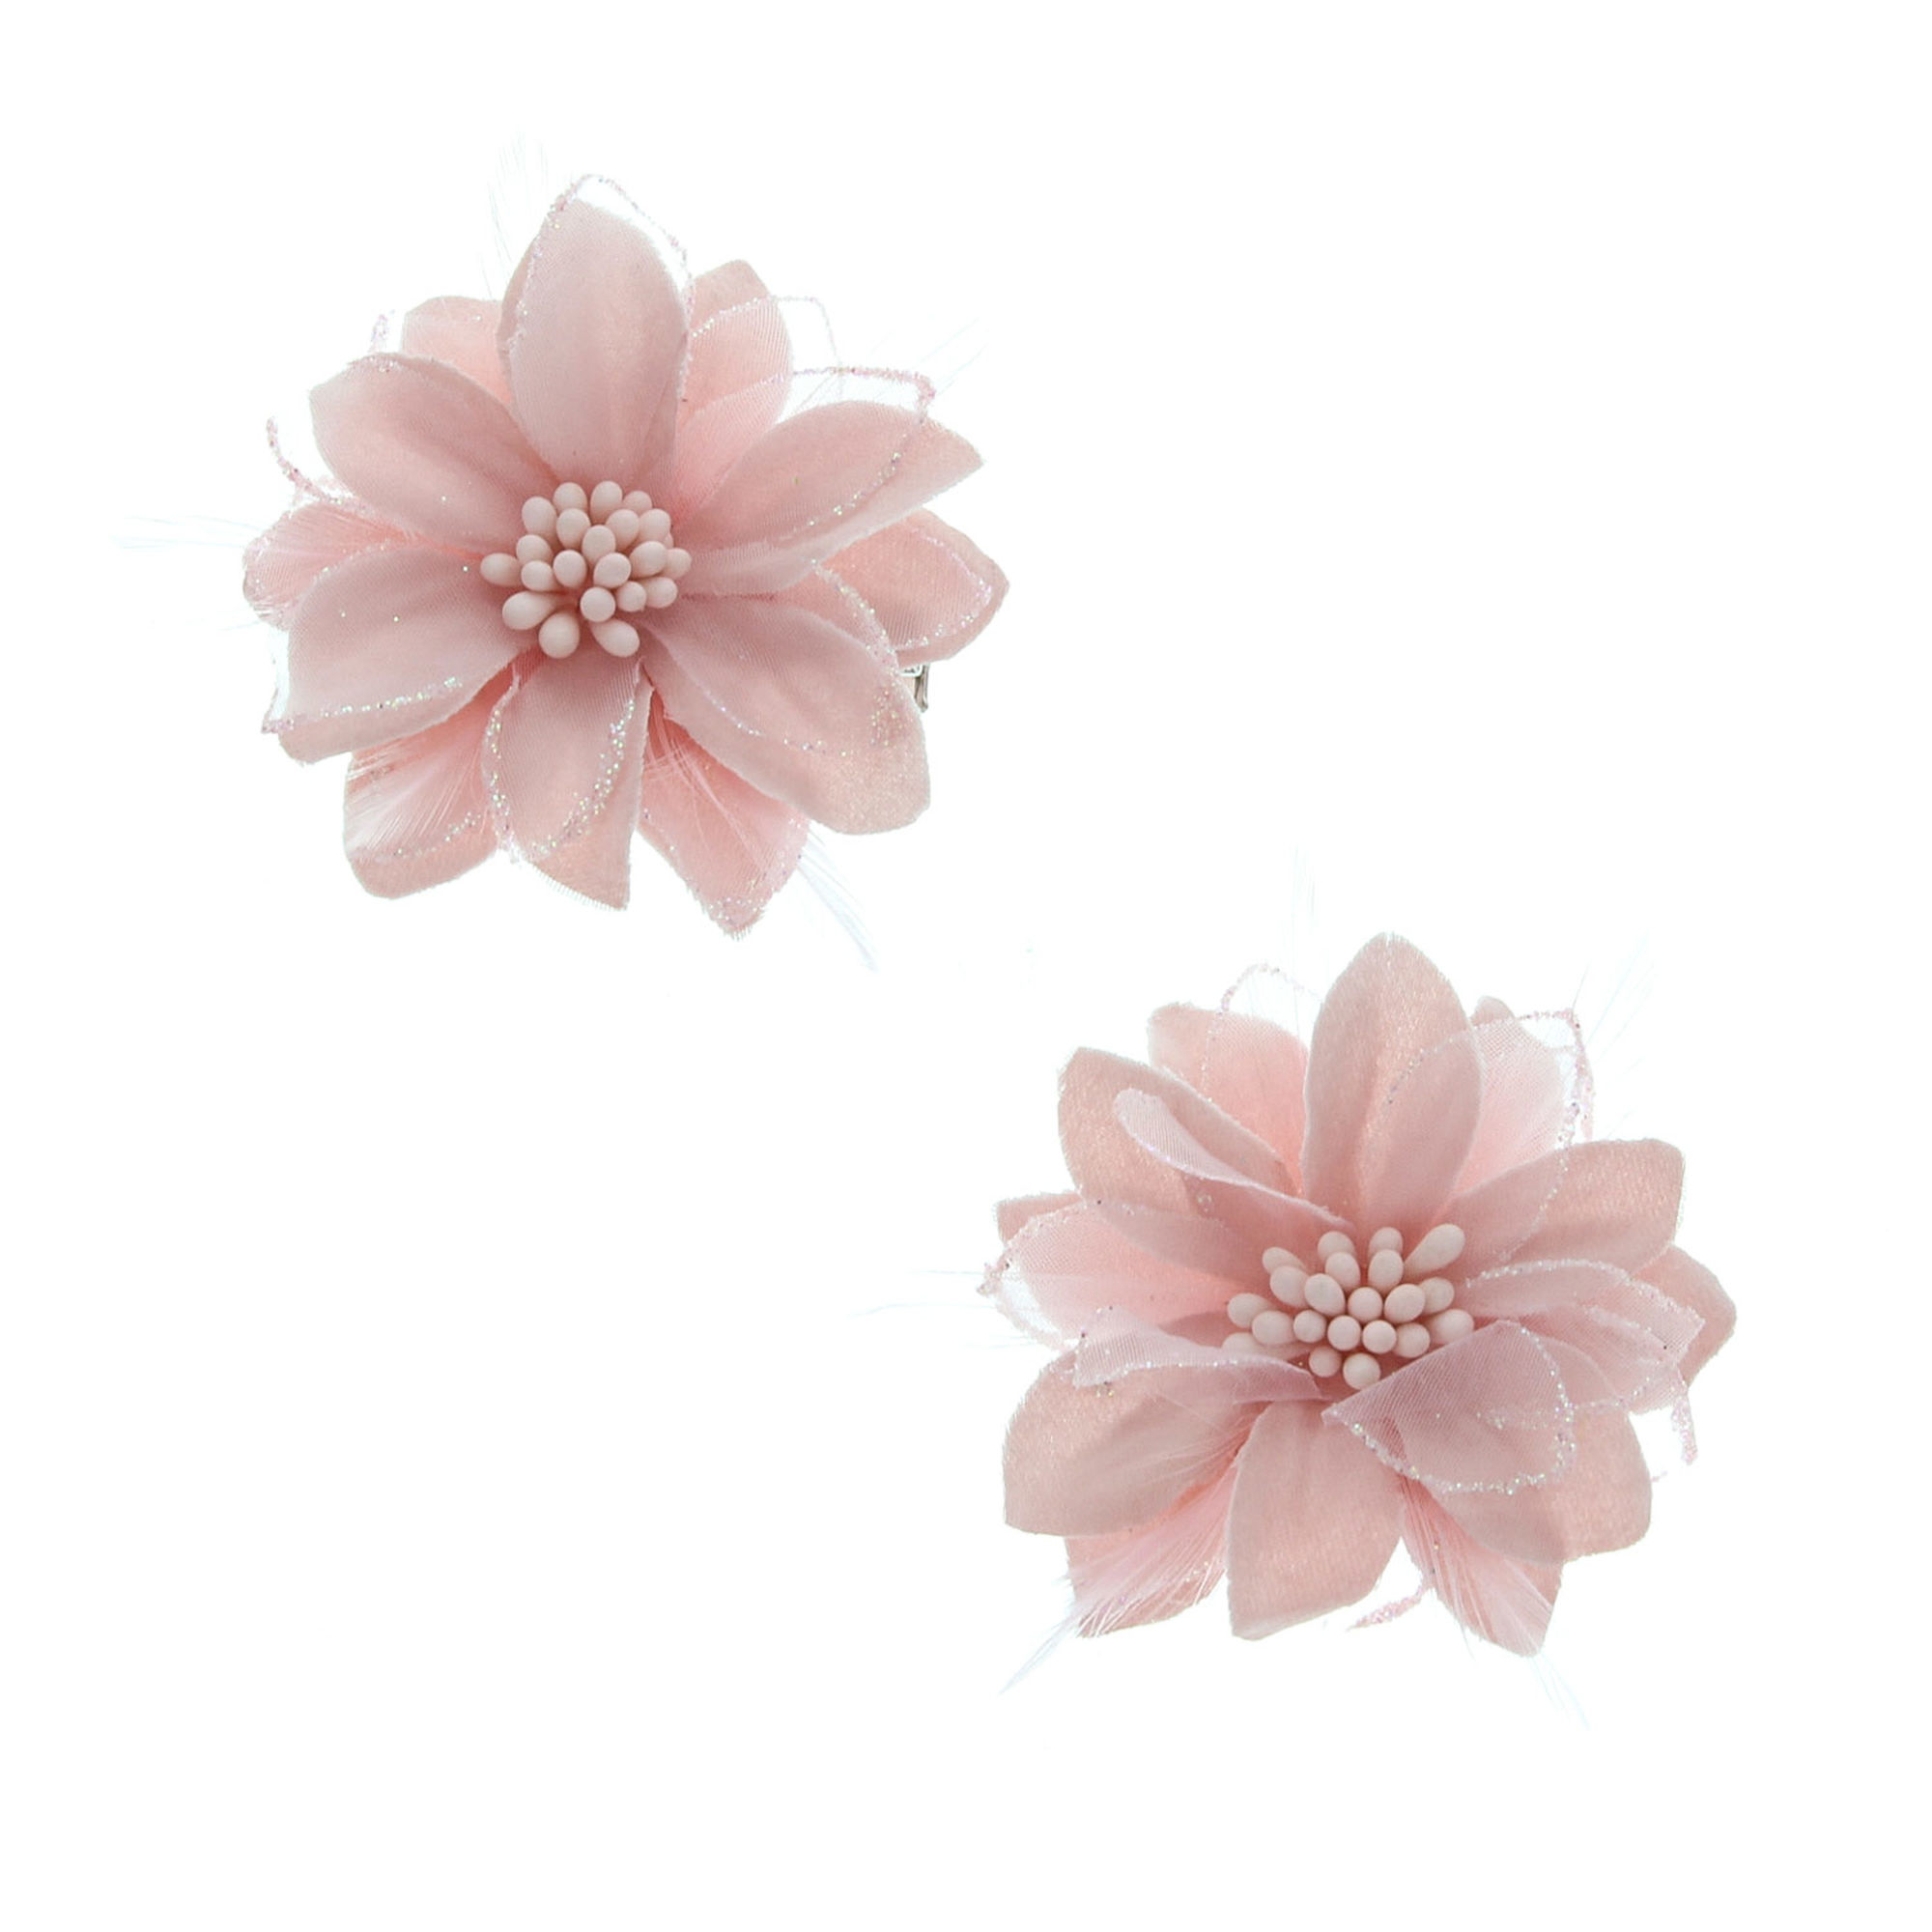 Light Pink Flowers - Dahlia , HD Wallpaper & Backgrounds